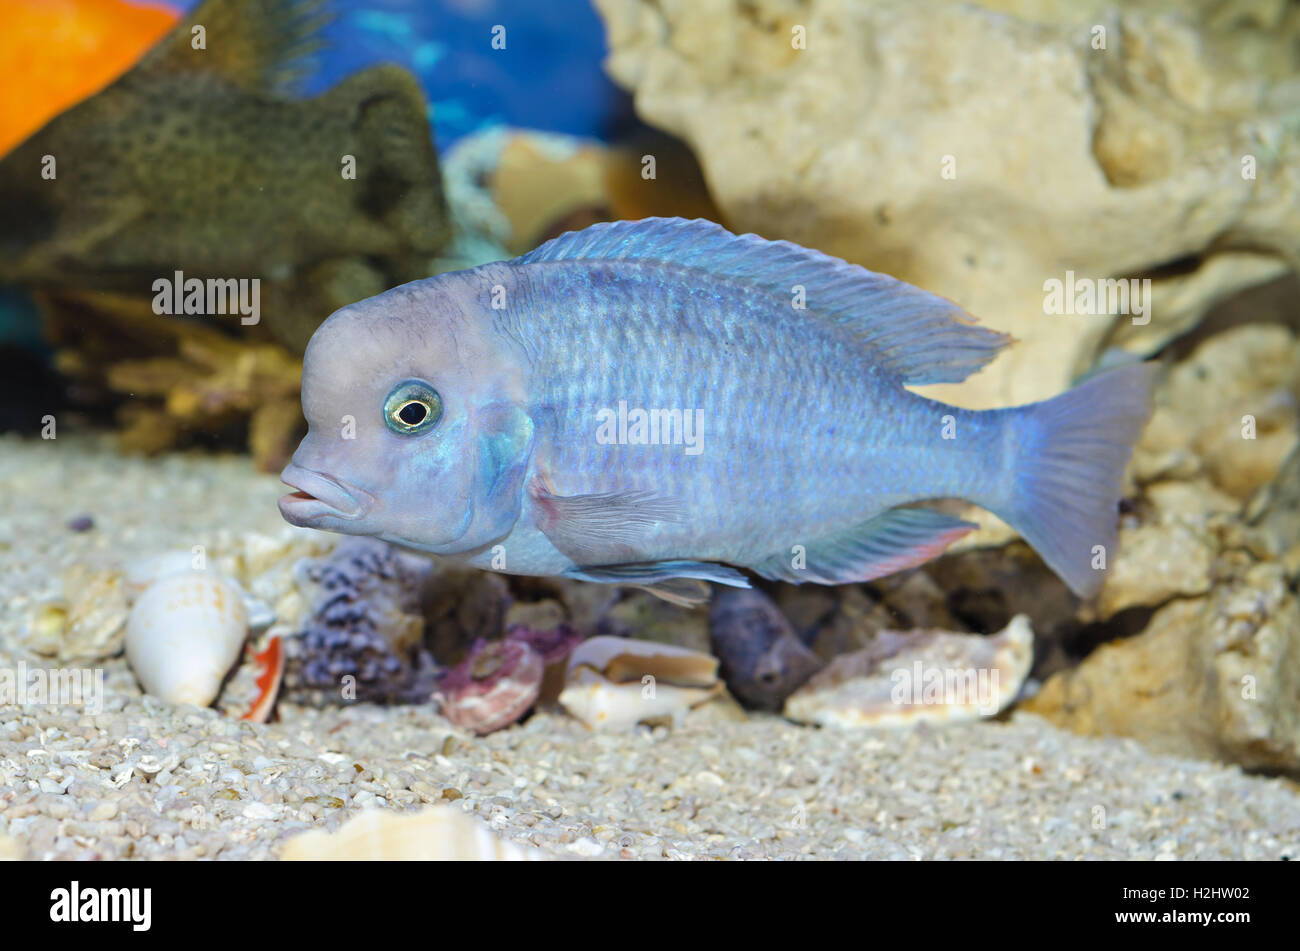 Blue fish swim in the Aquarium Stock Photo